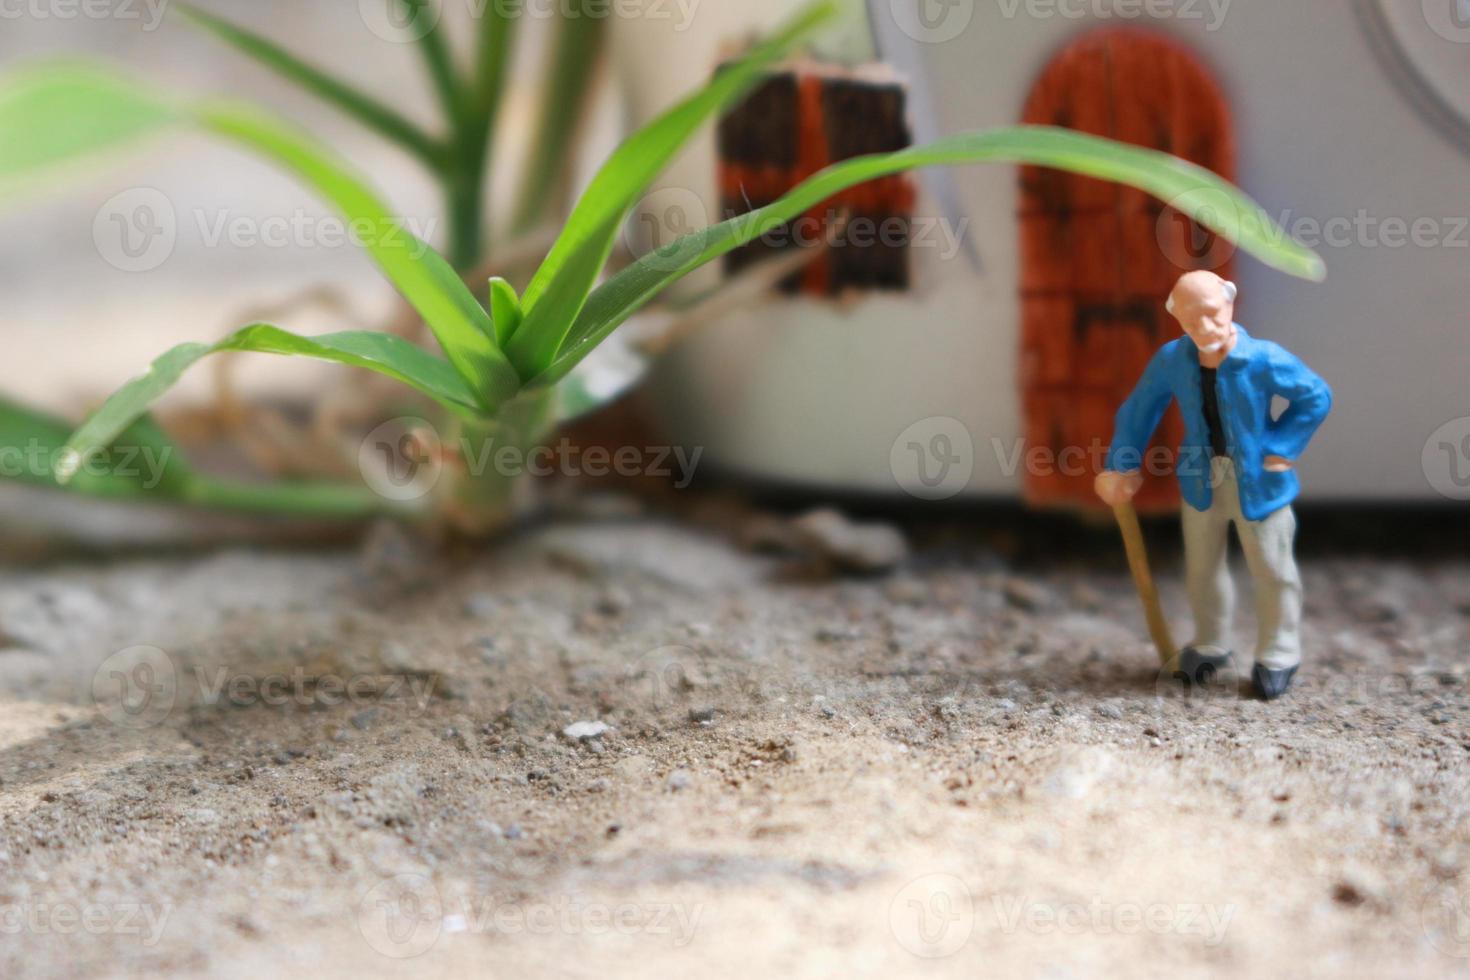 miniatuur figuur van een opa wie is aan het wachten in voorkant van de huis. foto